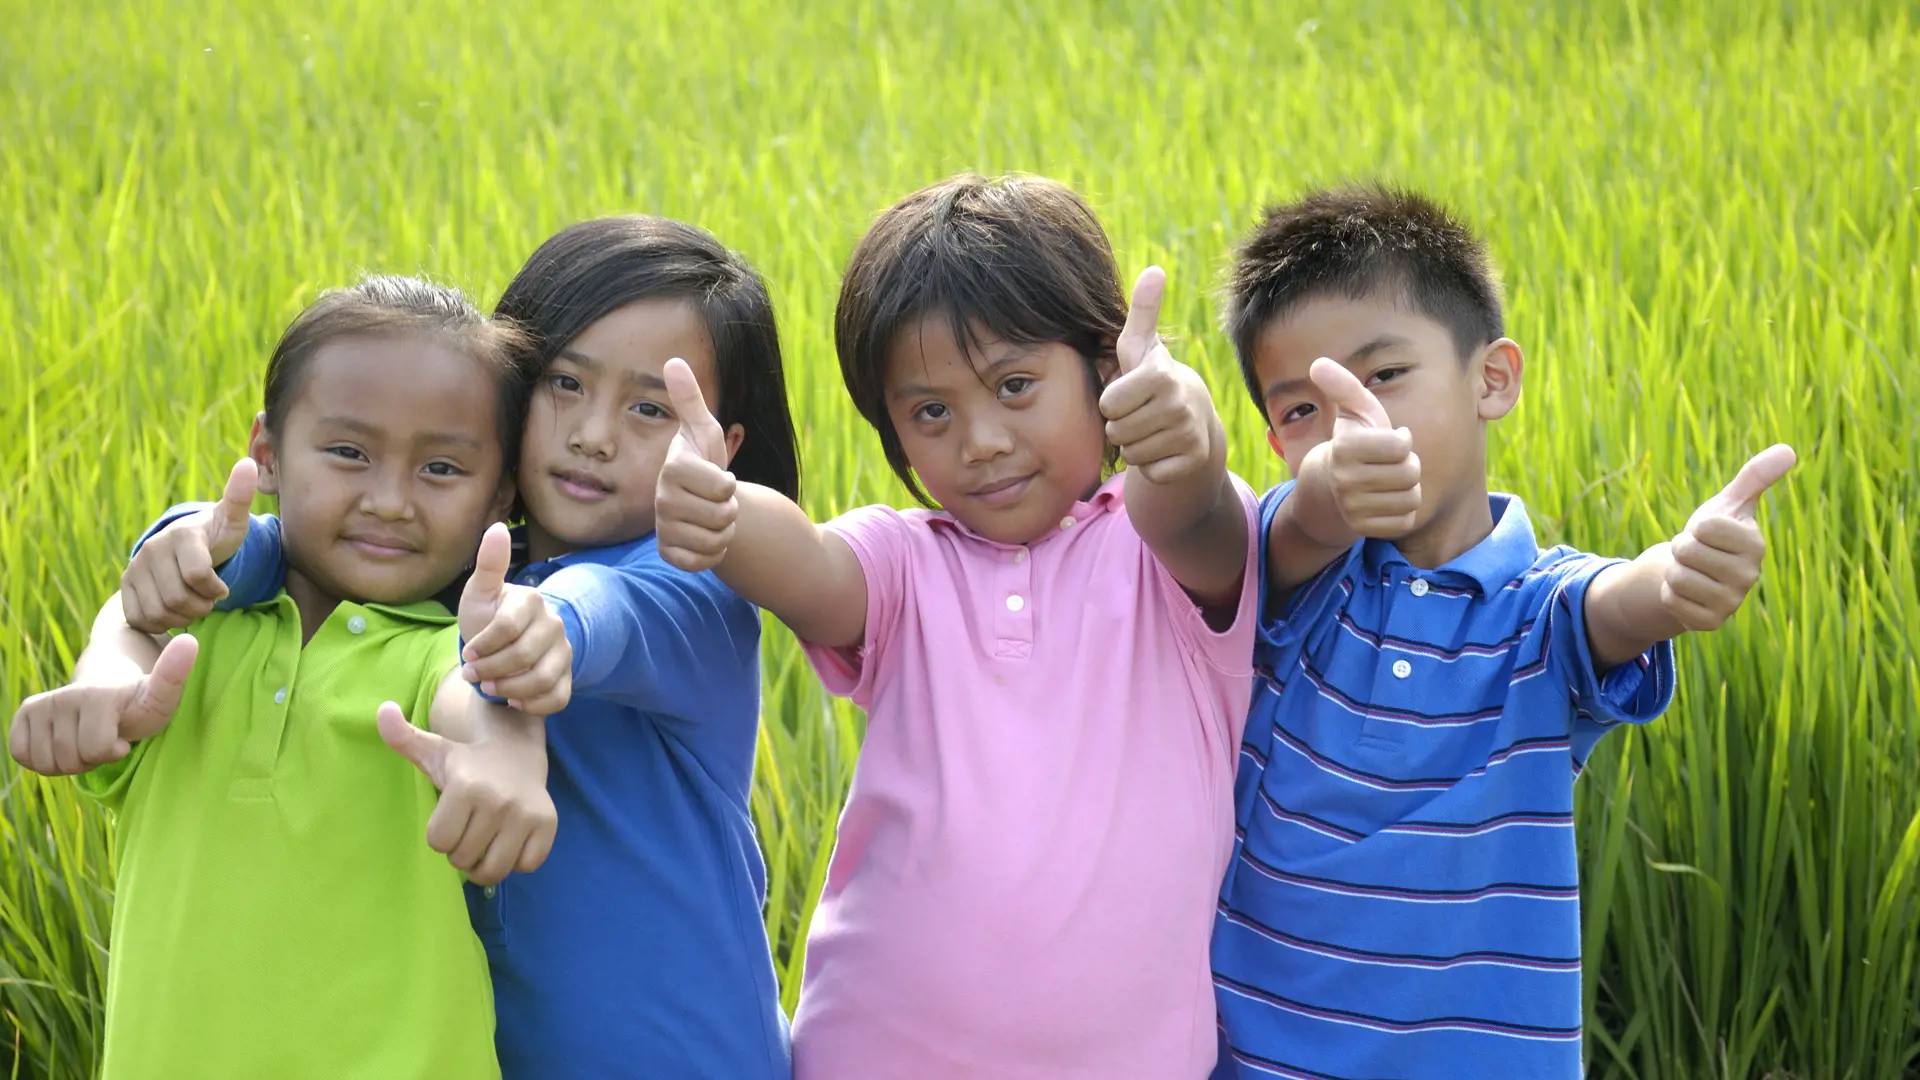 Børn i rismark.jpg